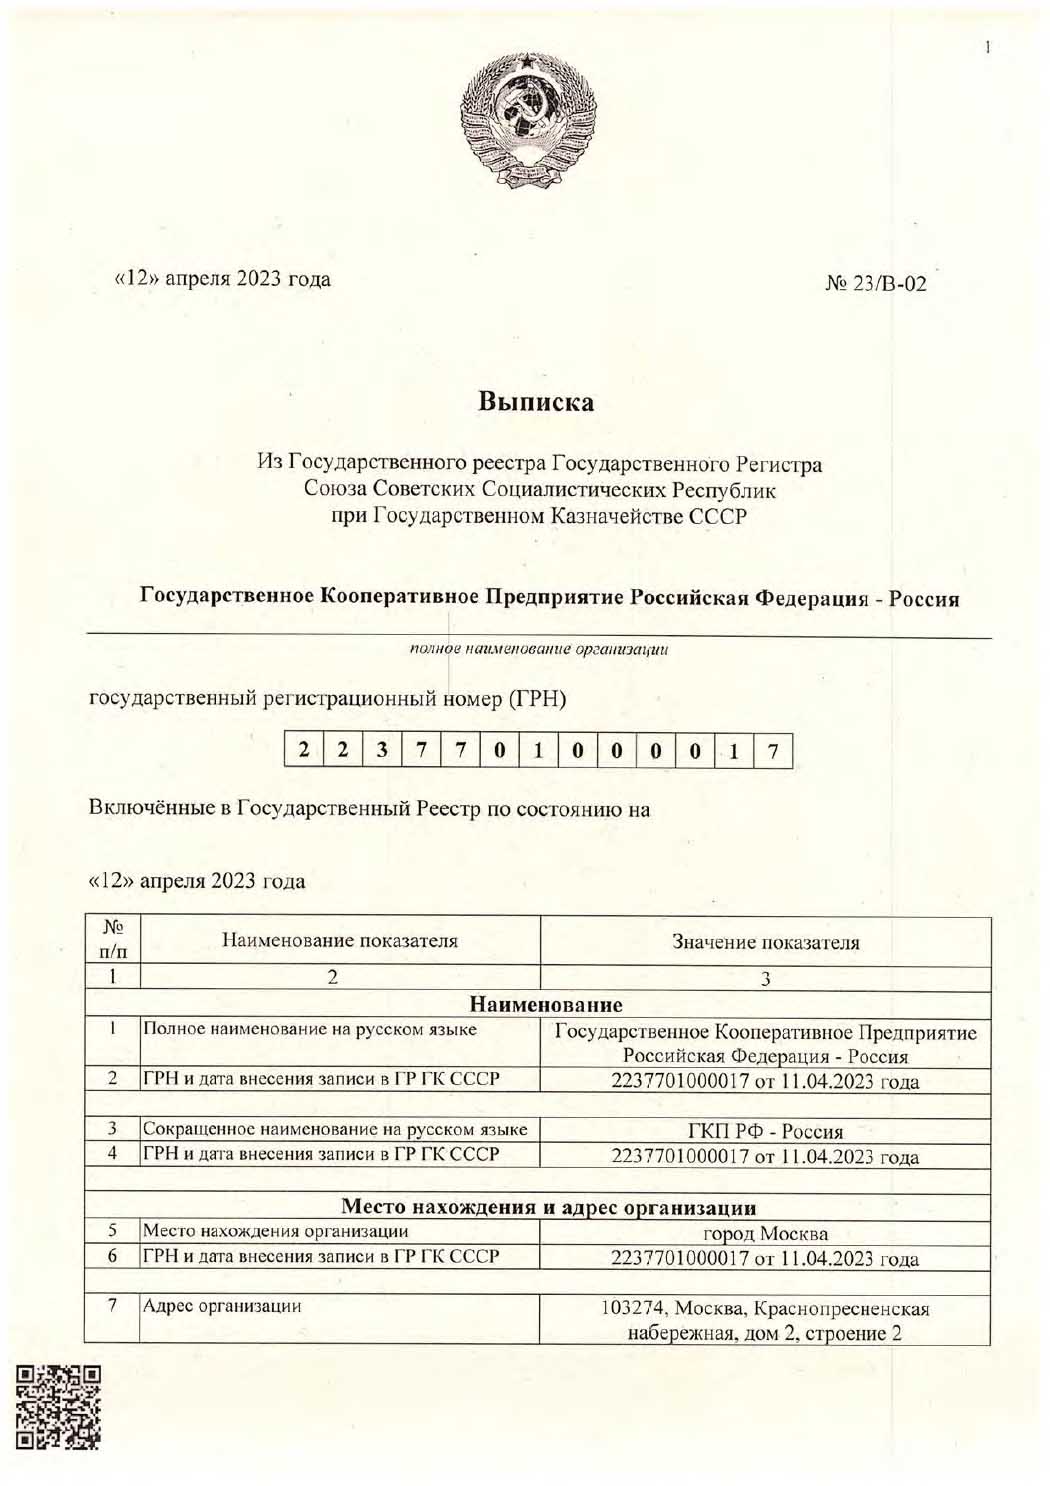 Нота Совета Министров Союза Советских Социалистических Республик. Всем Субъектам Права. 13 апреля 2023 года.